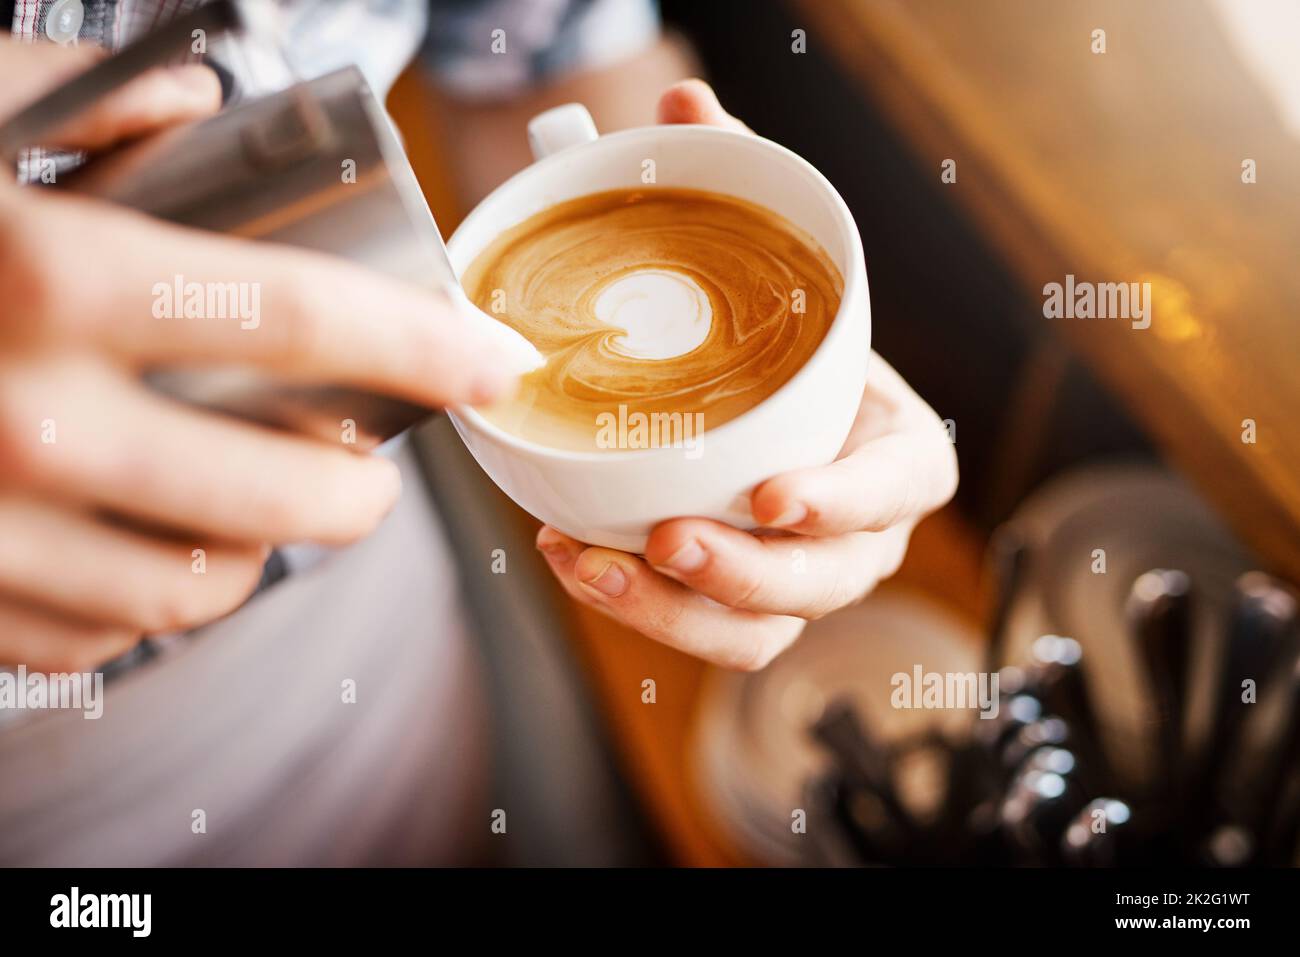 Réalisation de photos. Une dose courte d'un barista méconnu qui verse de la mousse de lait dans une tasse de café chaud pour en faire une photo. Banque D'Images